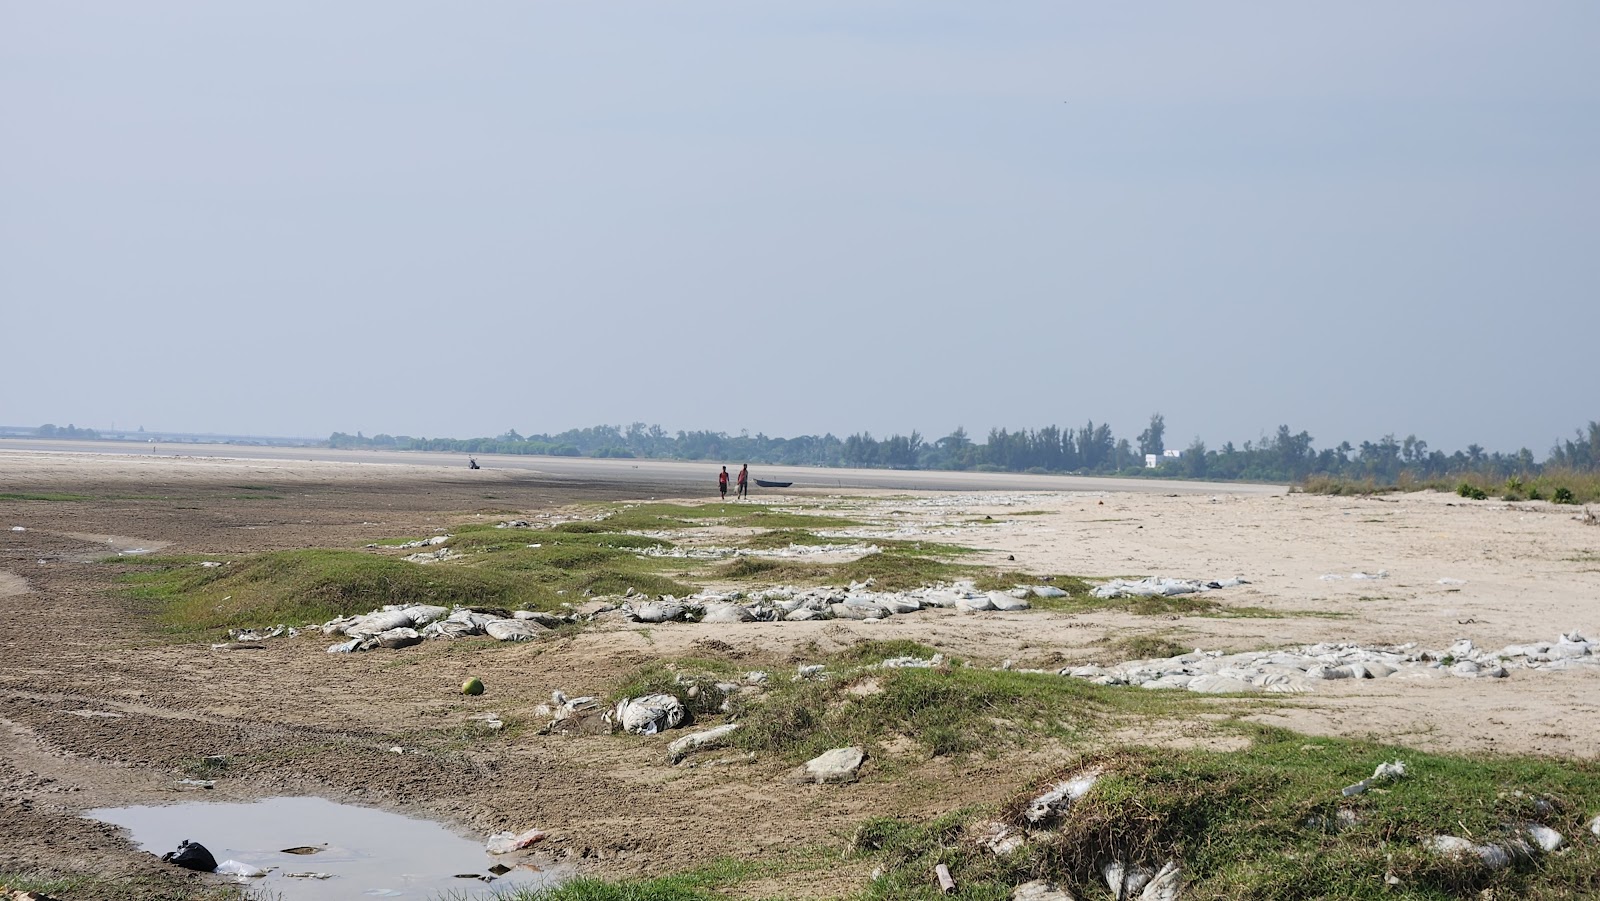 Photo de Boguran Jalpai Sea Beach - endroit populaire parmi les connaisseurs de la détente